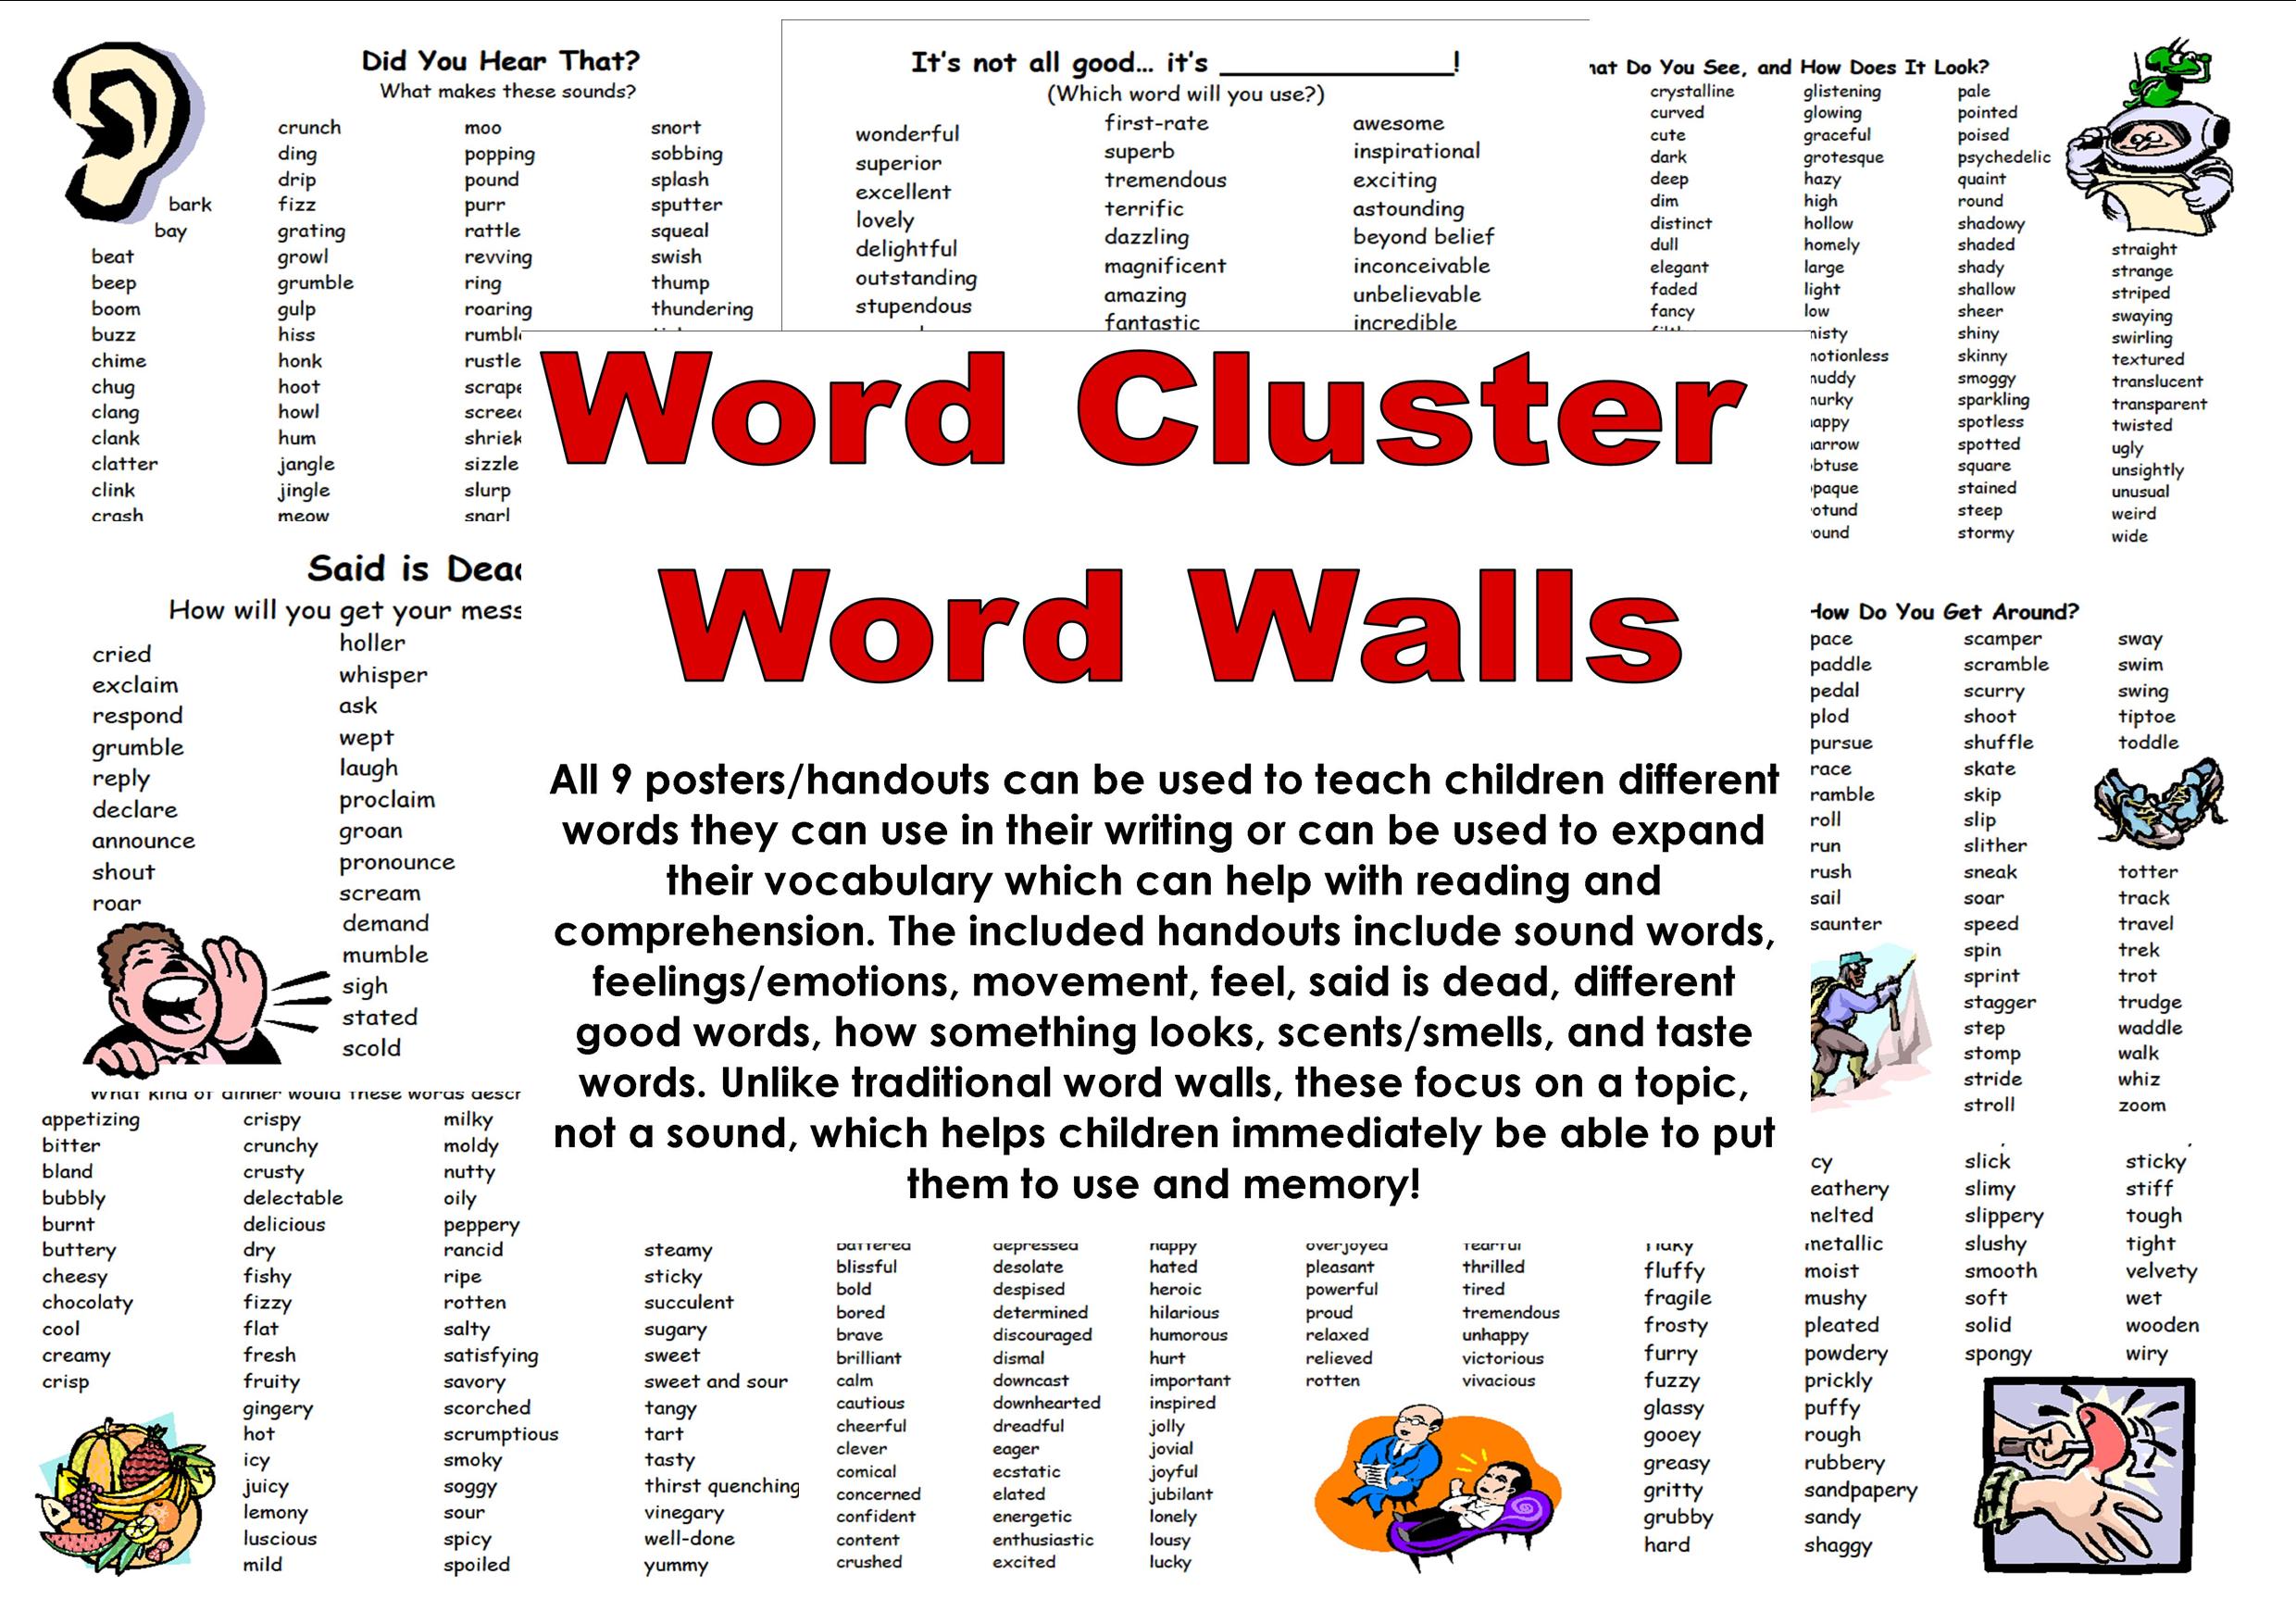 Wordwall describing. Word Clusters. Эмоции Wordwall. Wordwall Words. English Cluster Words.